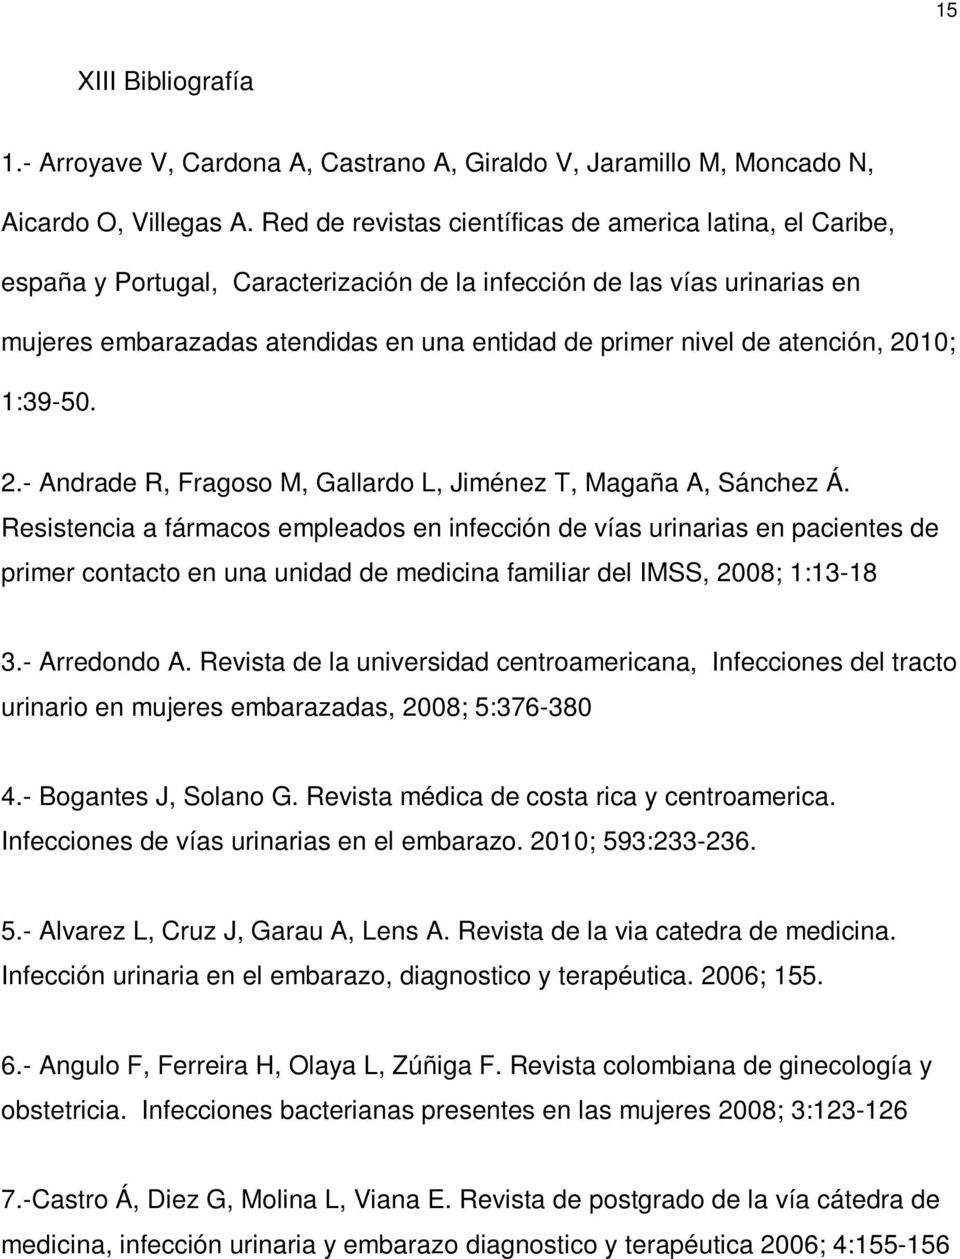 atención, 2010; 1:39-50. 2.- Andrade R, Fragoso M, Gallardo L, Jiménez T, Magaña A, Sánchez Á.